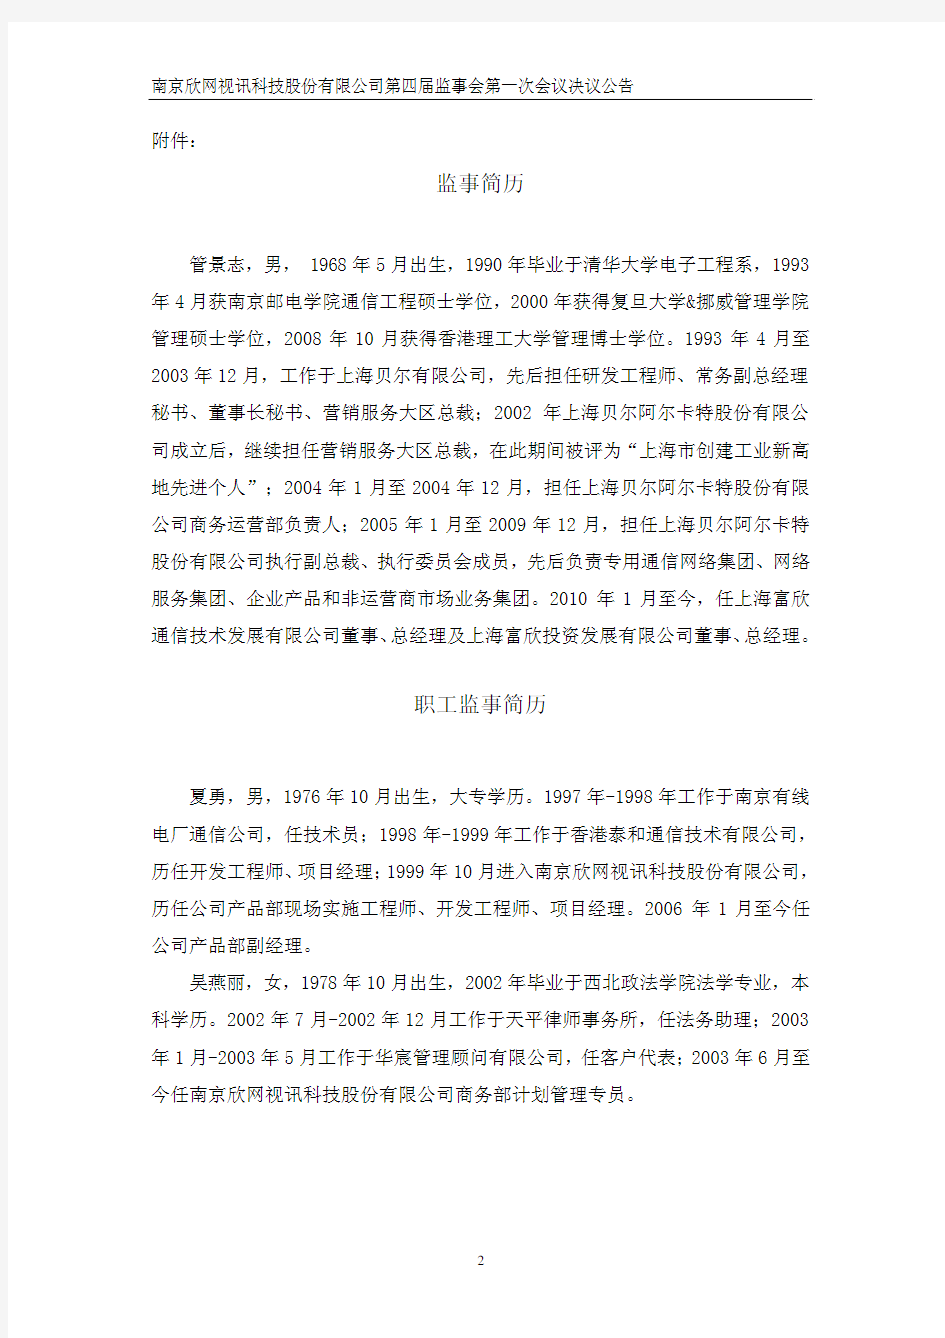 南京欣网视讯科技股份有限公司第四届监事会第一次会议决议公告